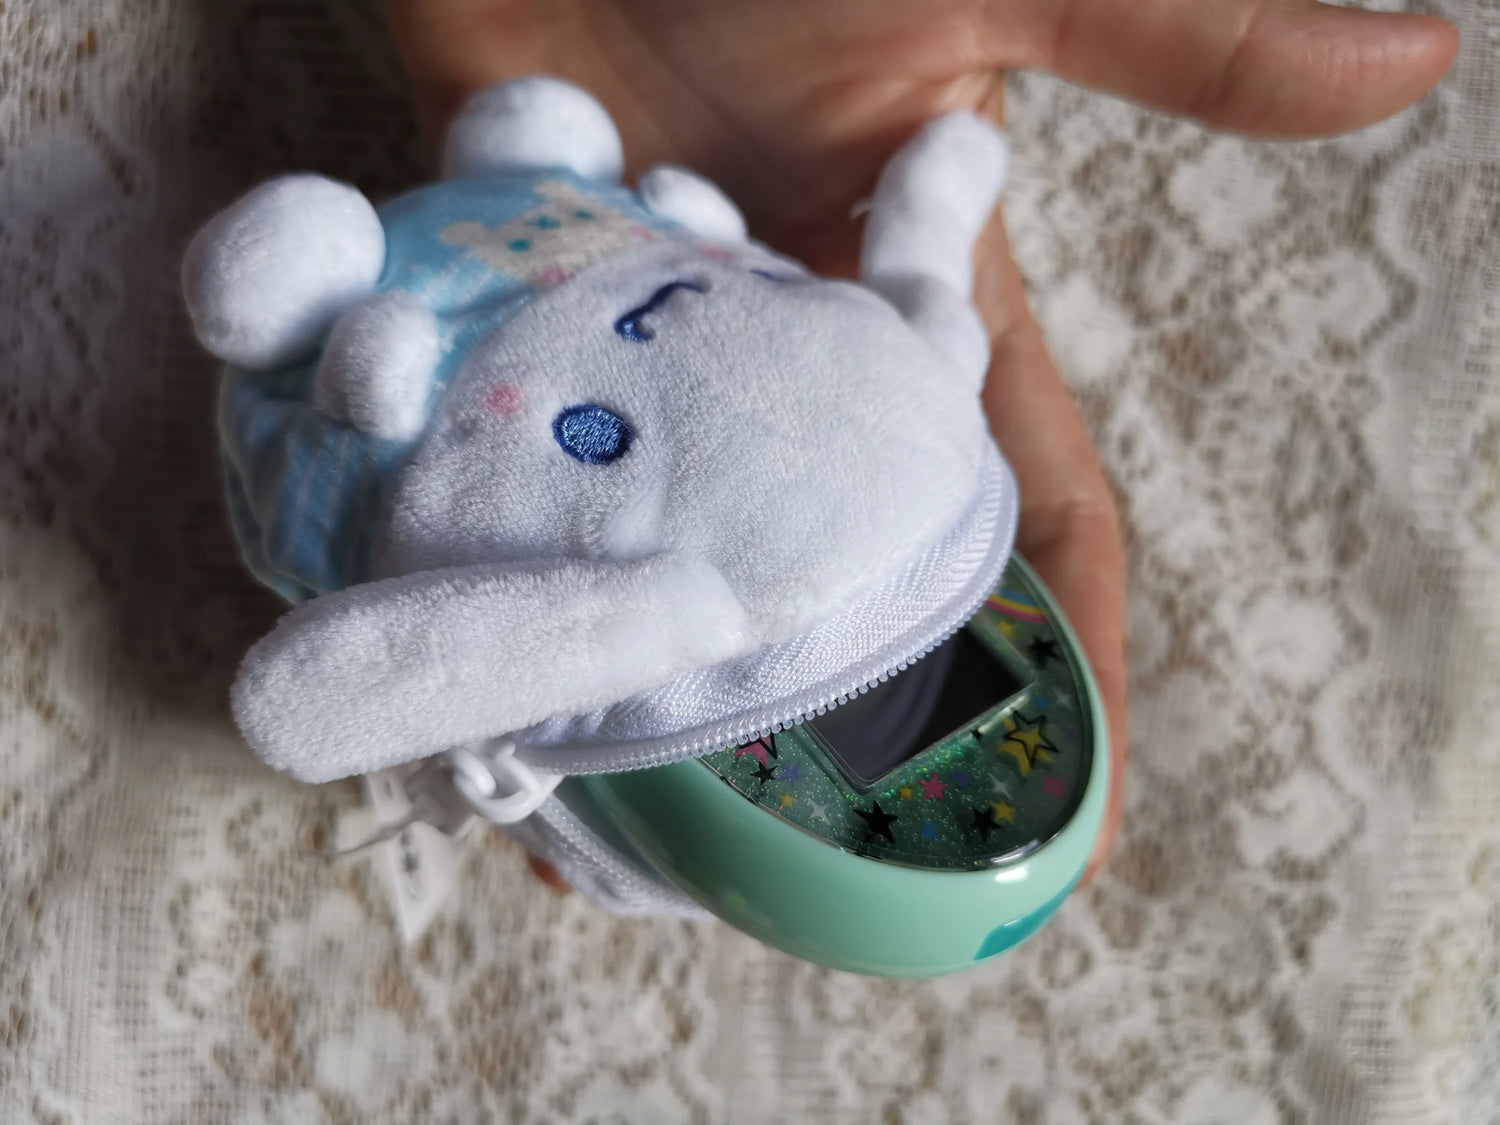 Japan Sanrio Fluffy Plush Toy - Cinnamoroll / Marine